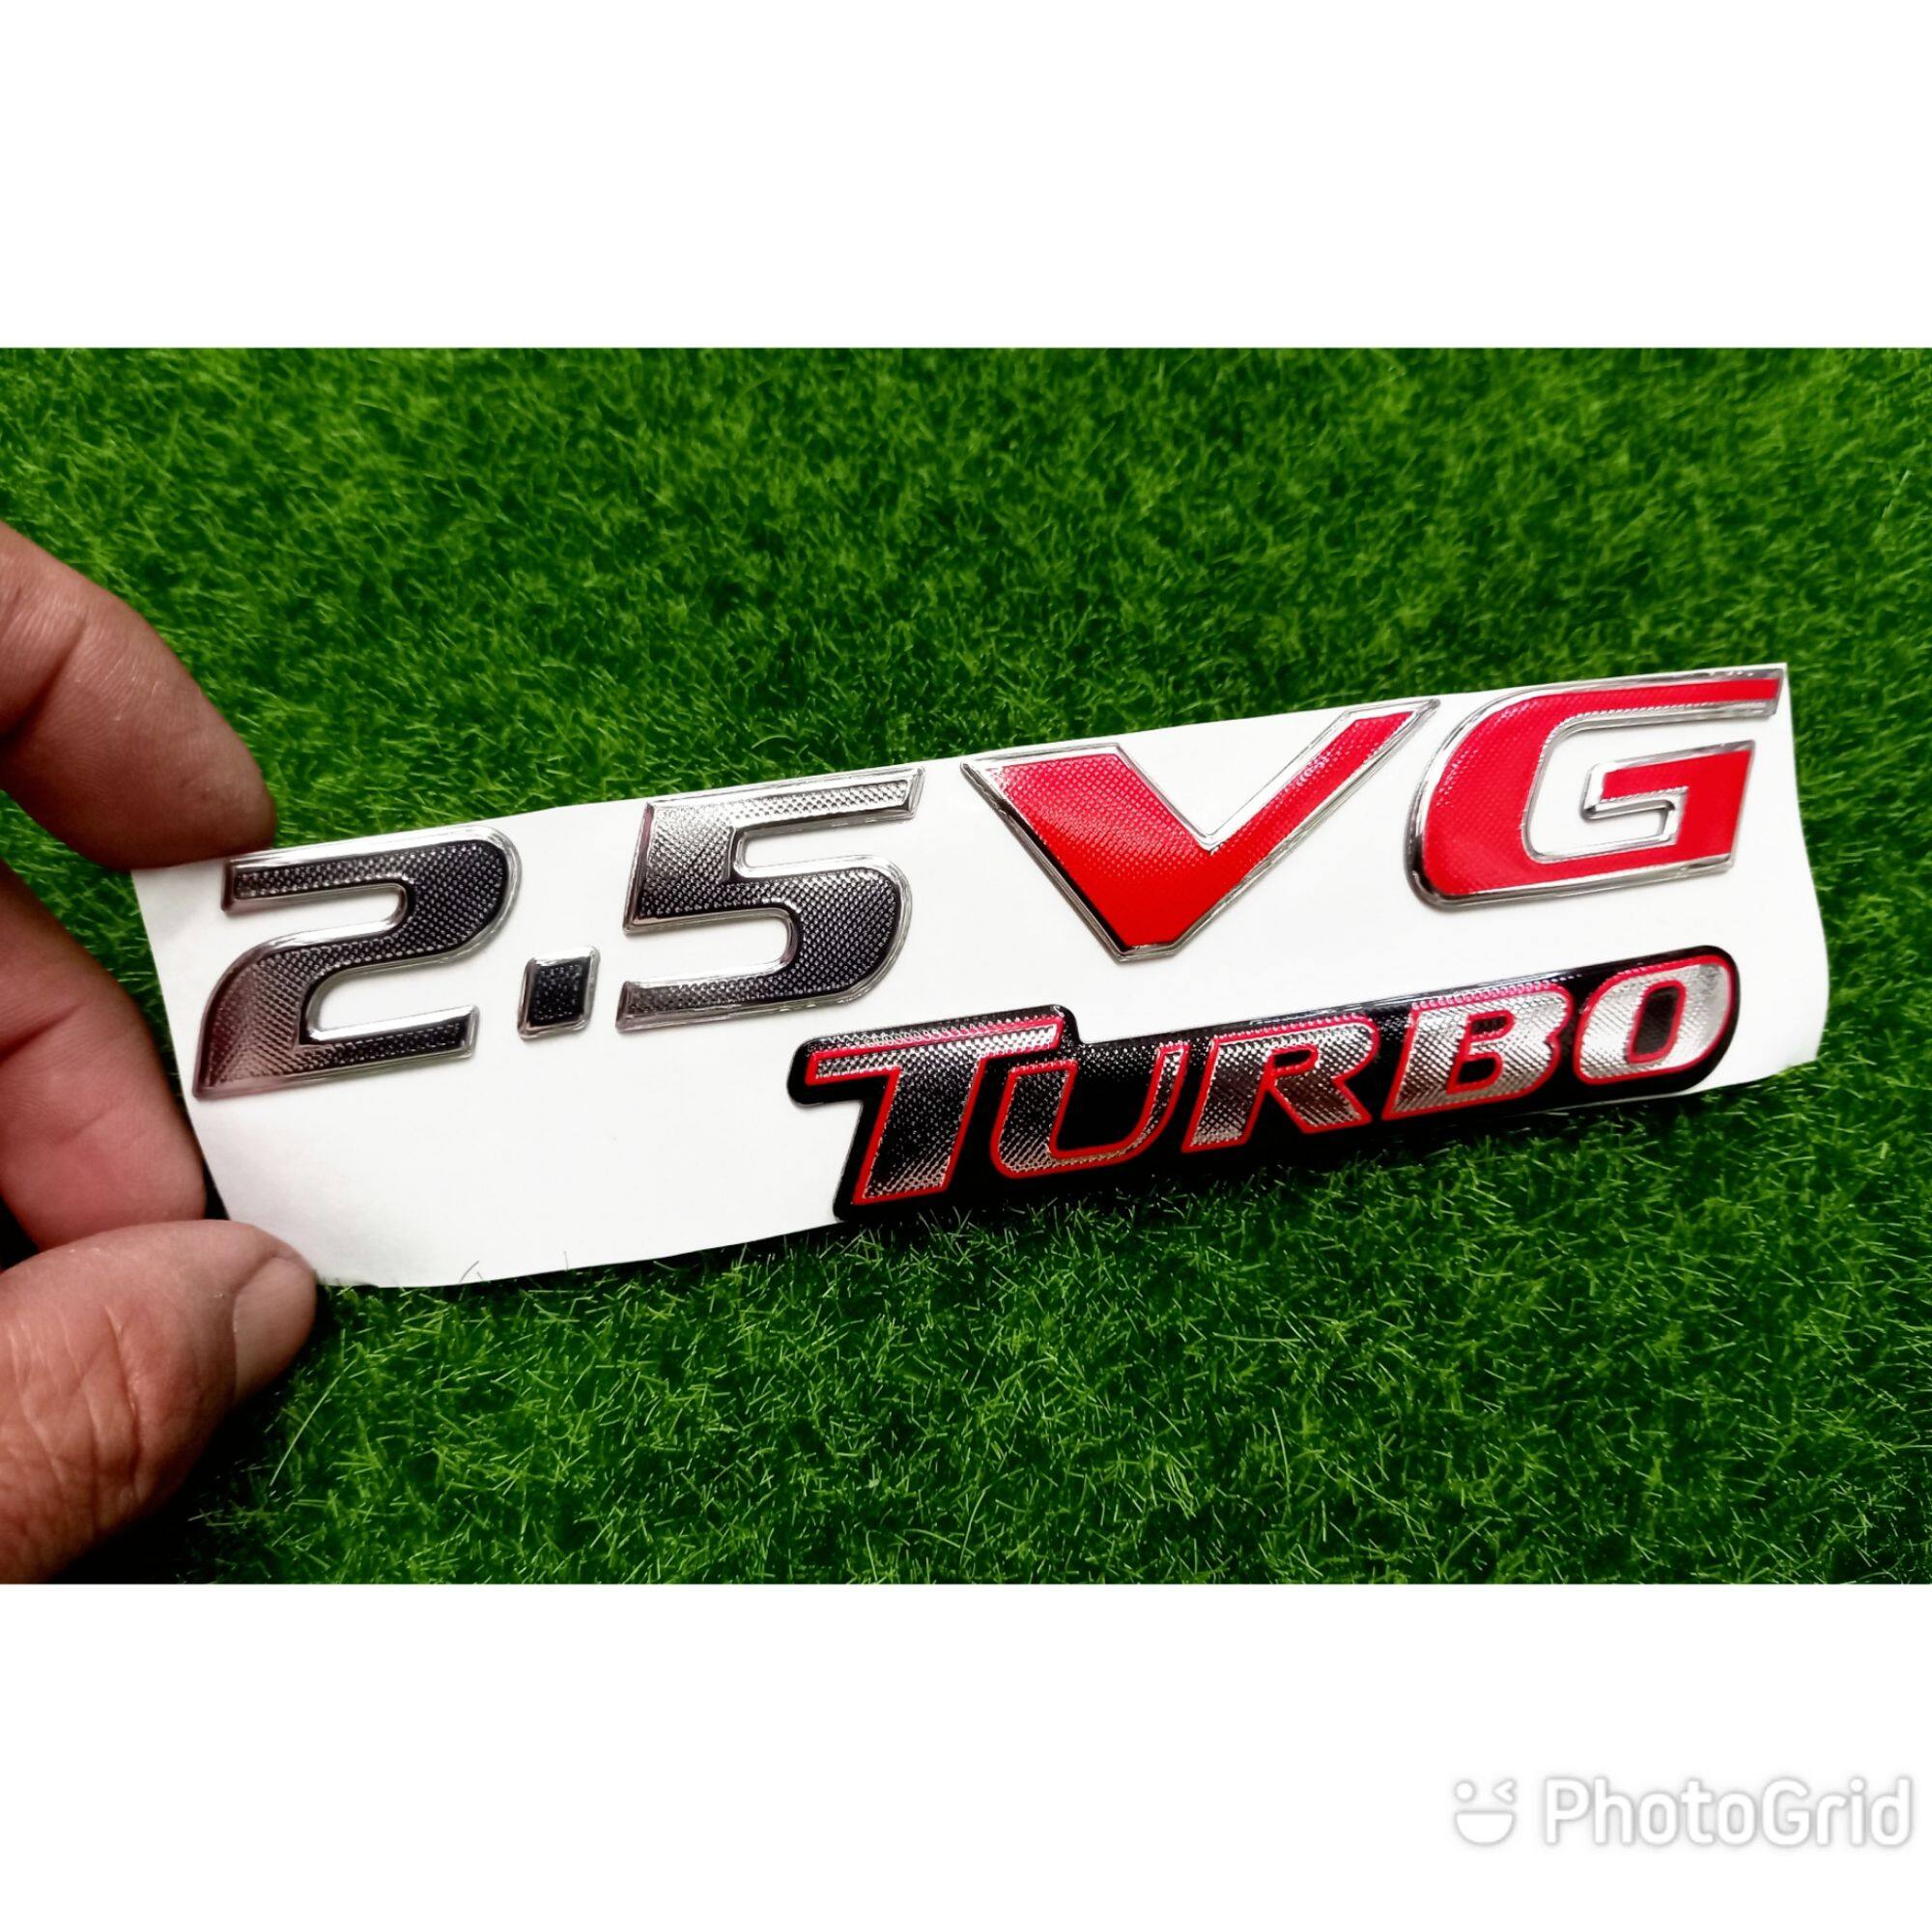 โลโก้ 2.5 VG Turbo สำหรับติดท้ายรถ มิตซูบิชิ ไทรทัน